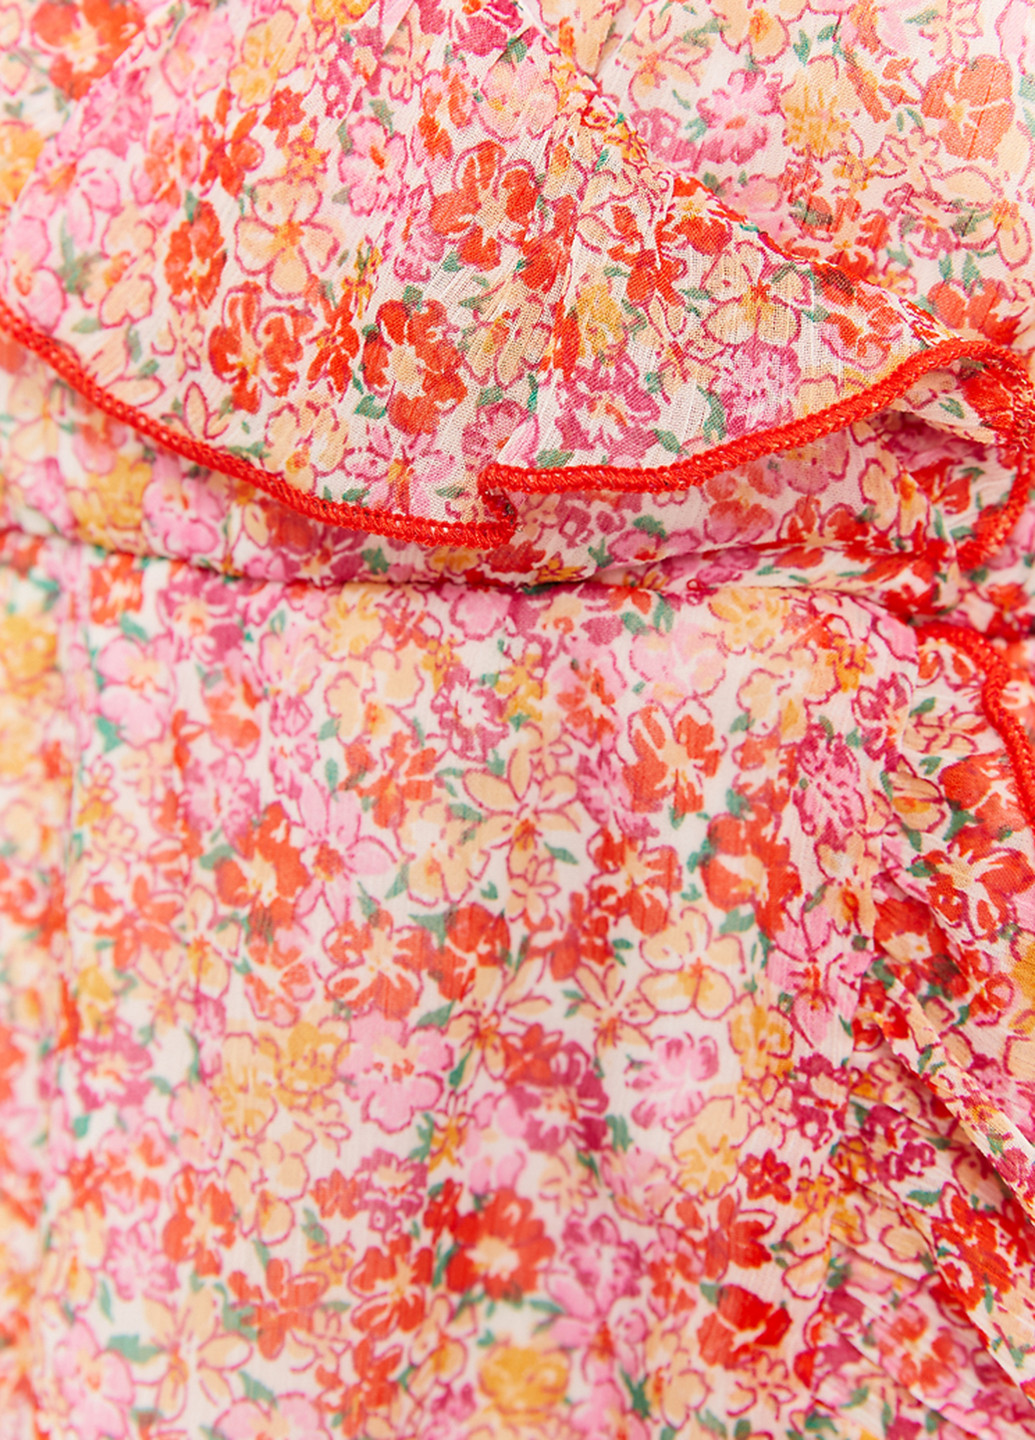 Розовое кэжуал платье на запах Tally Weijl с цветочным принтом